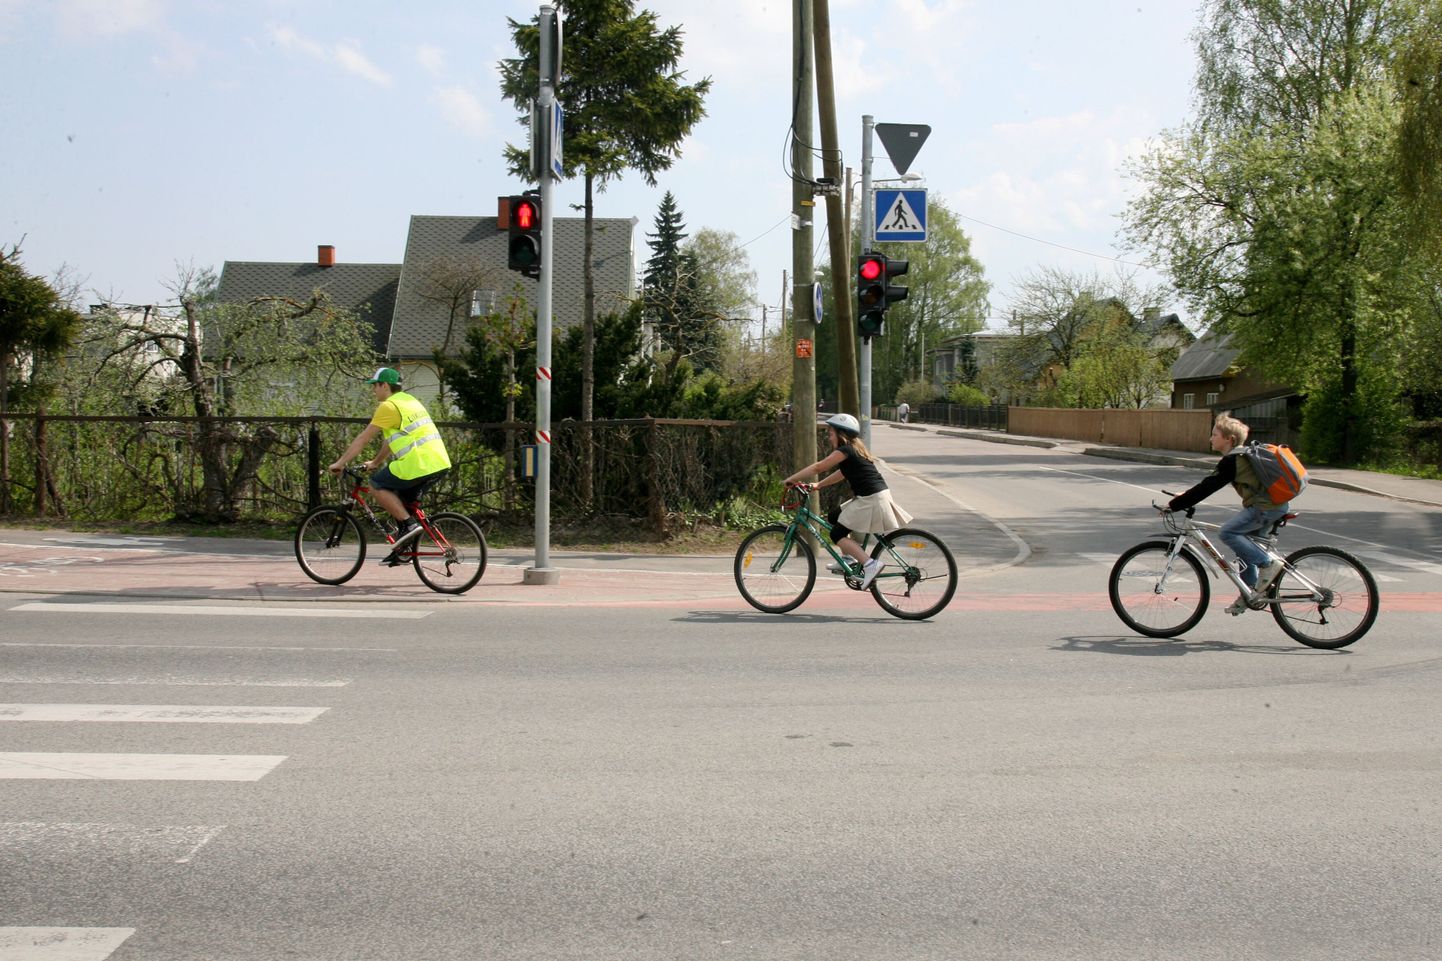 Pildil jalgratturid linnasõidul.